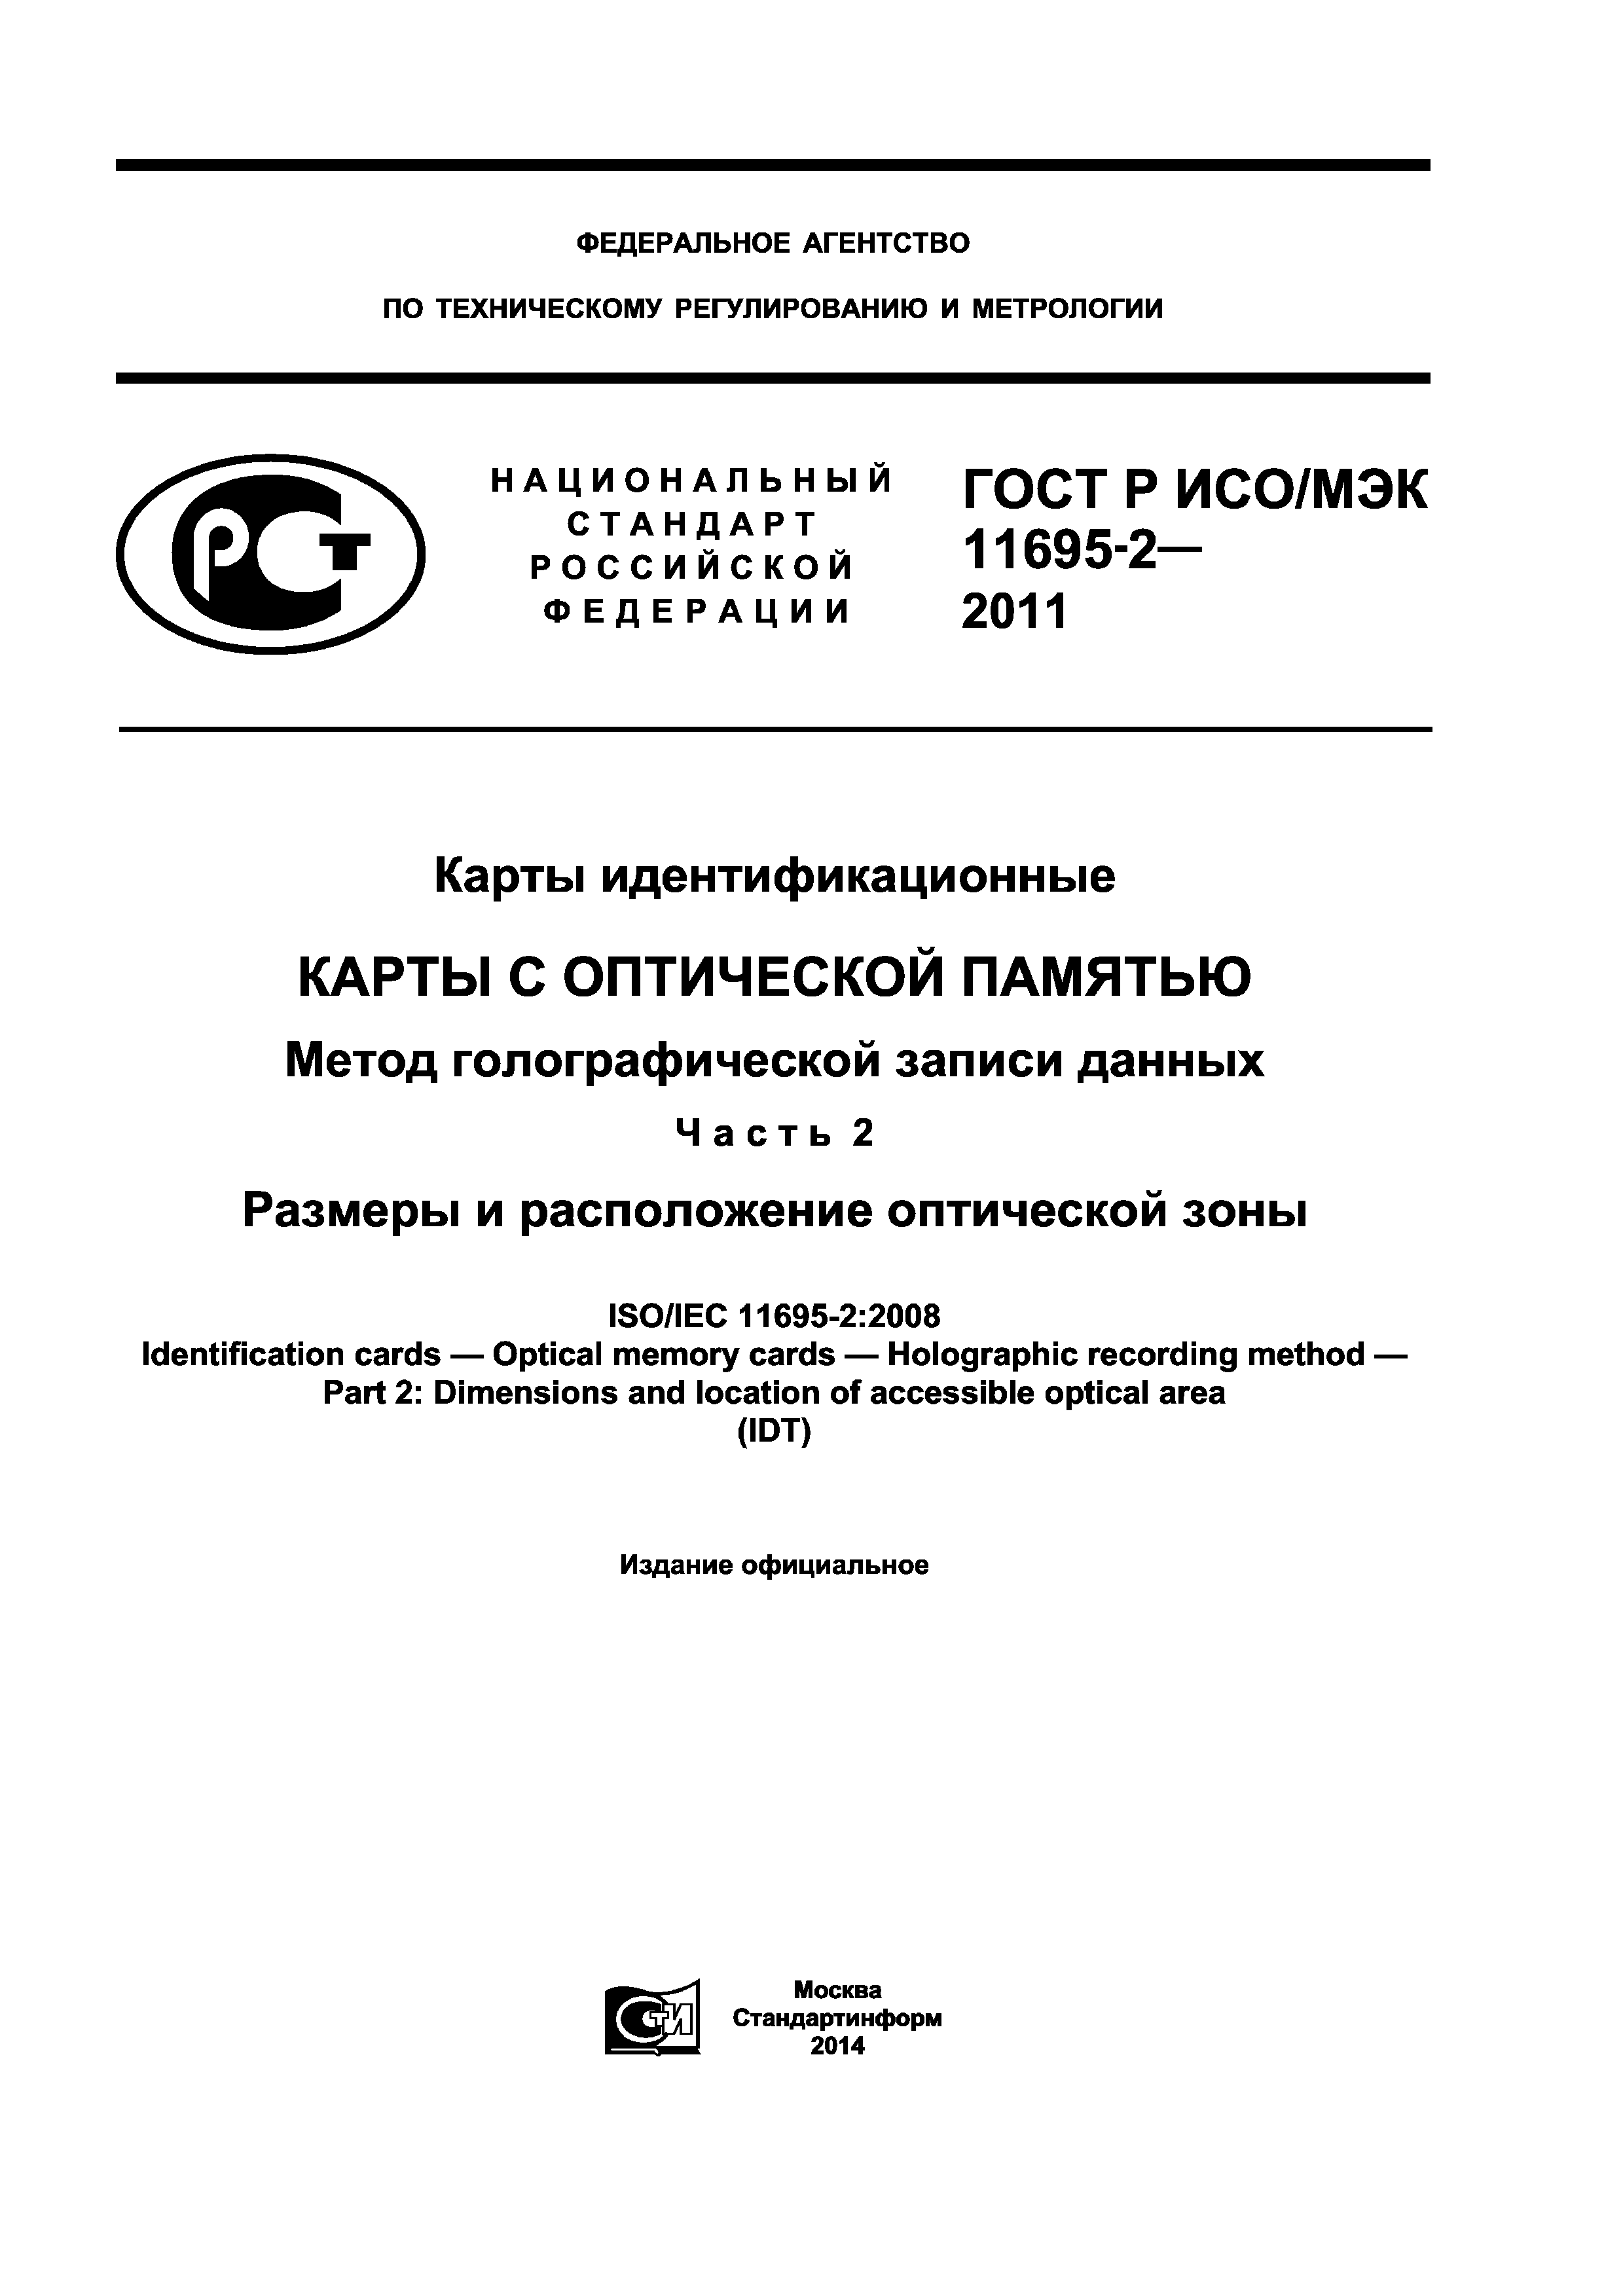 ГОСТ Р ИСО/МЭК 11695-2-2011